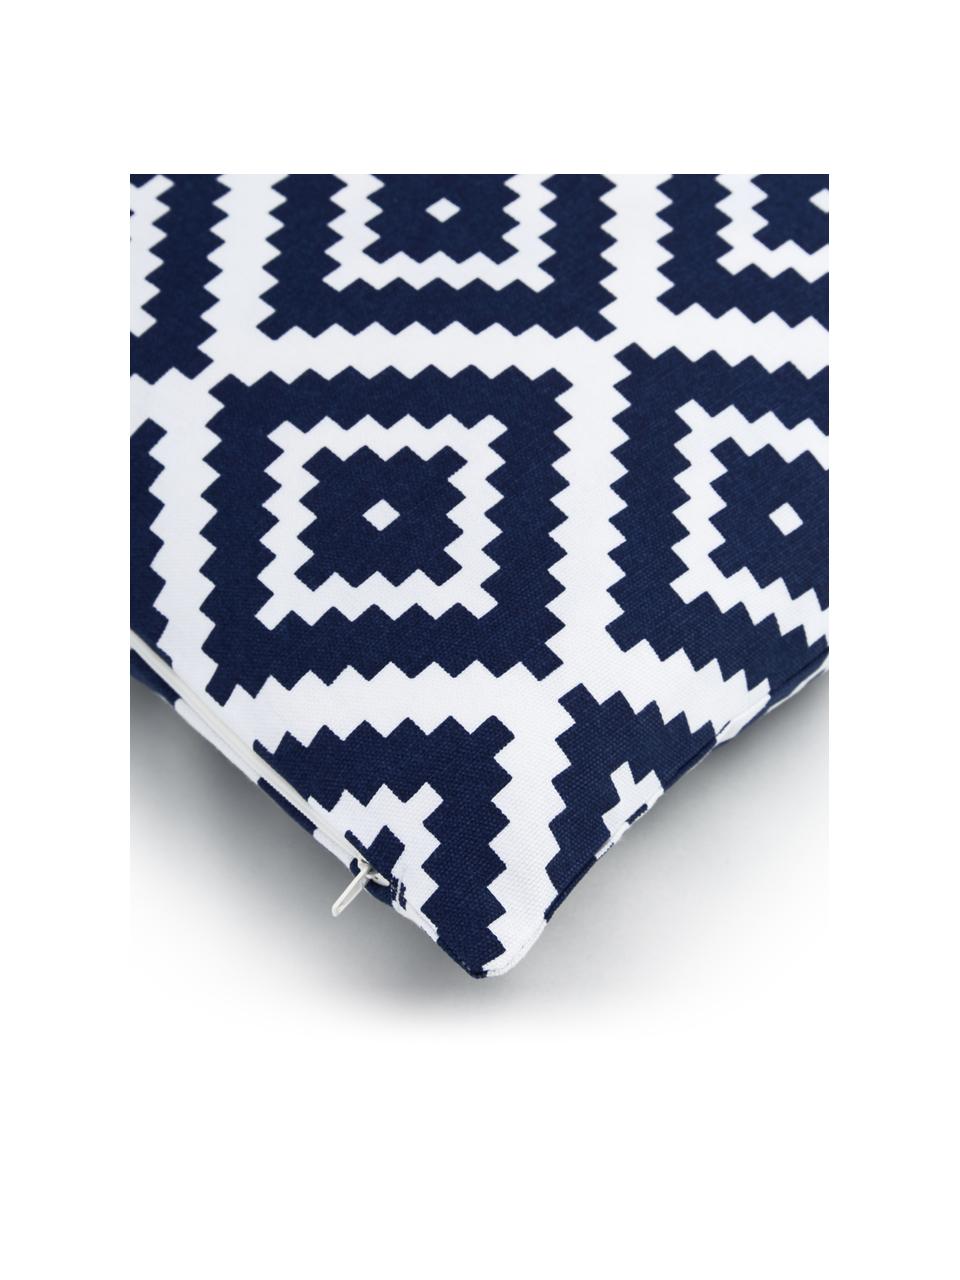 Kissenhülle Miami mit grafischem Muster, 100% Baumwolle, Dunkelblau, Weiss, B 45 x L 45 cm